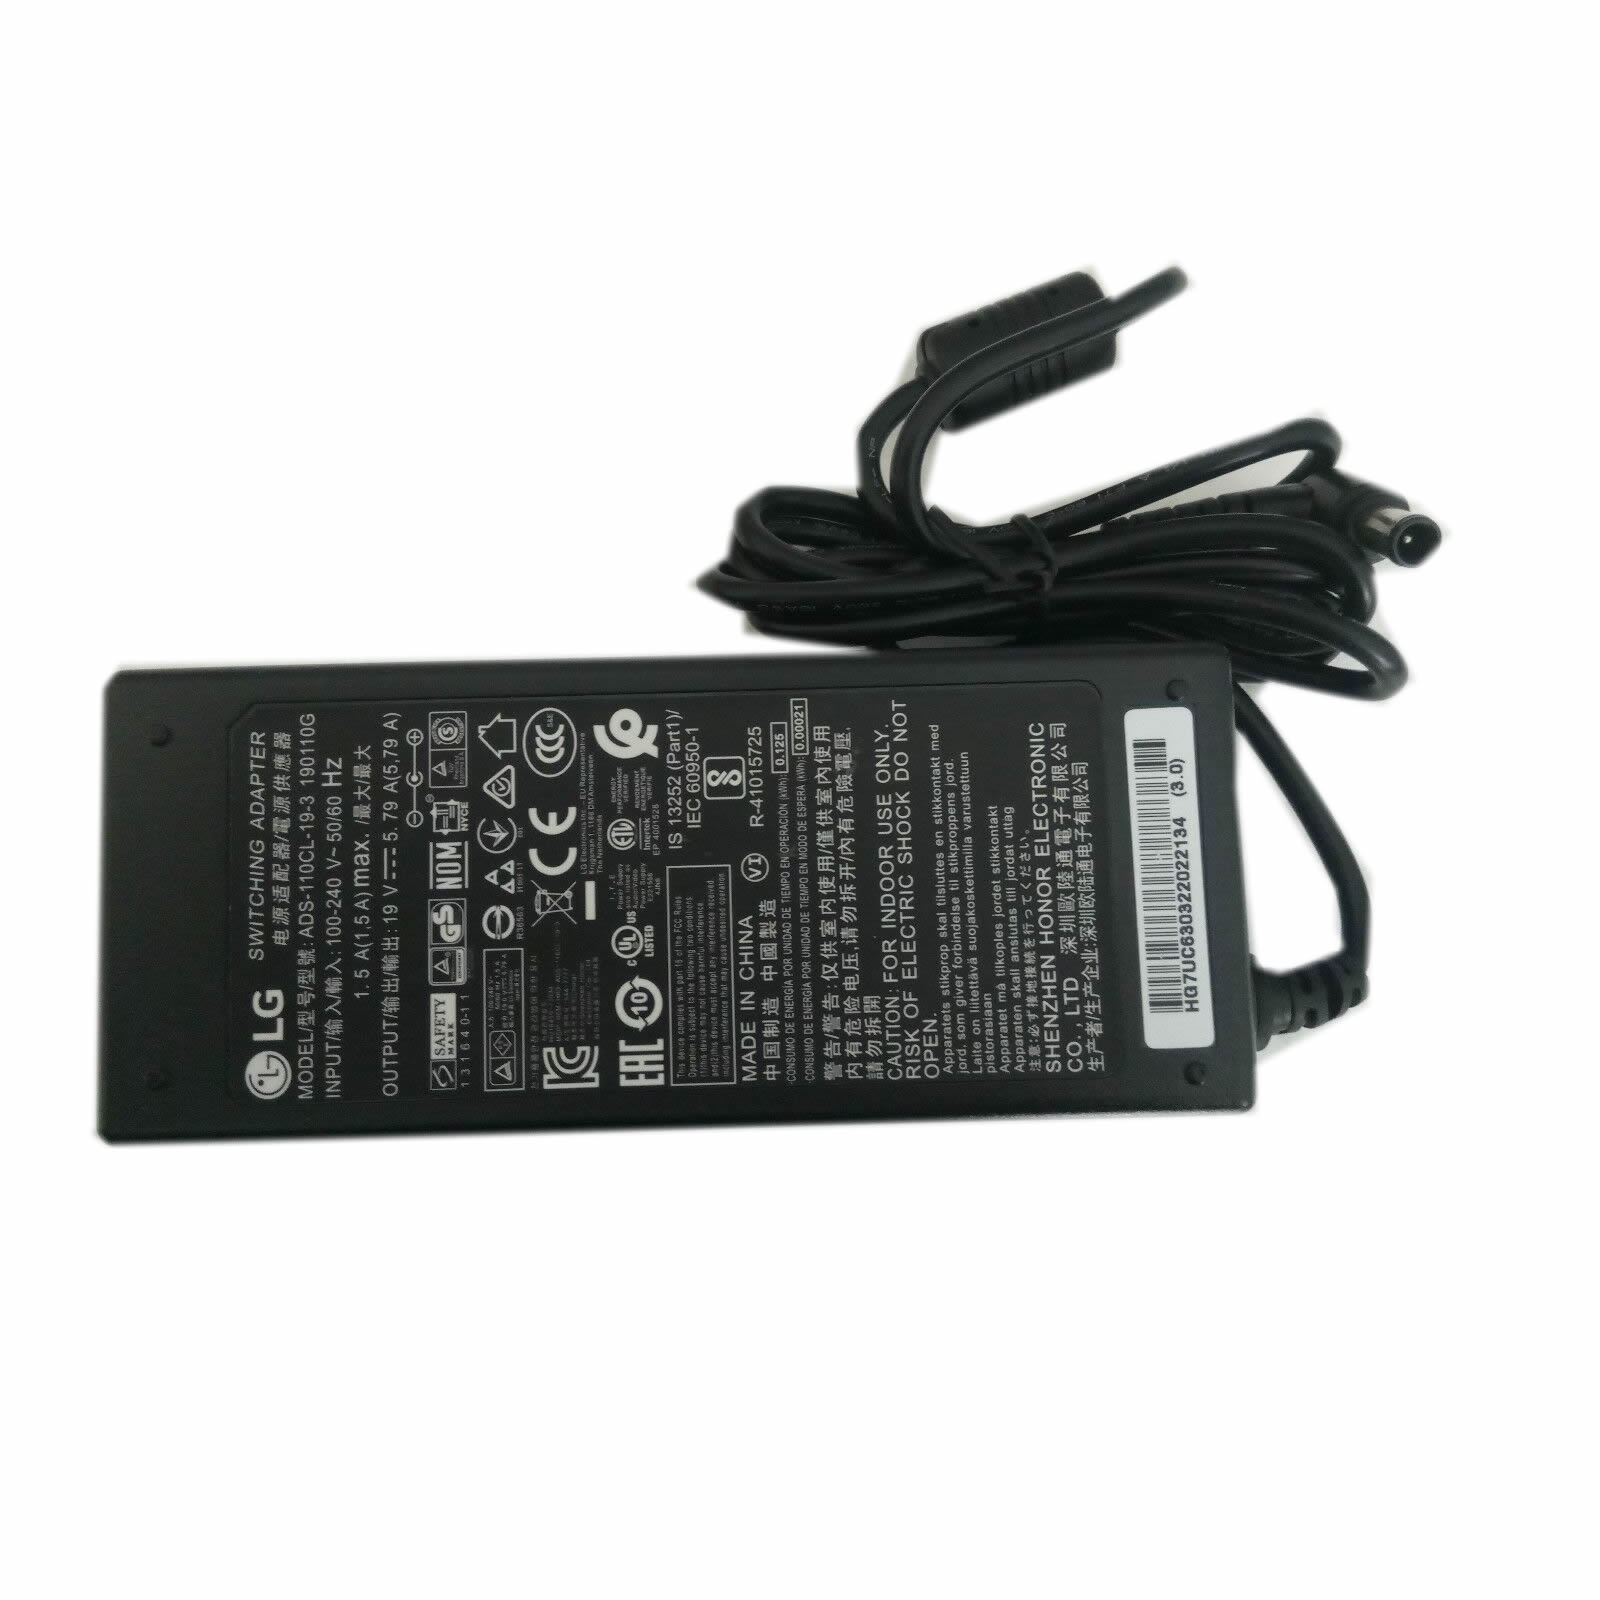 LG ADS-110CL-19-3 190110G EAY63032202 adaptateur chargeur 19V 3.42A 65W alimentation originale pour LG PF1500G, 34UM95C séries